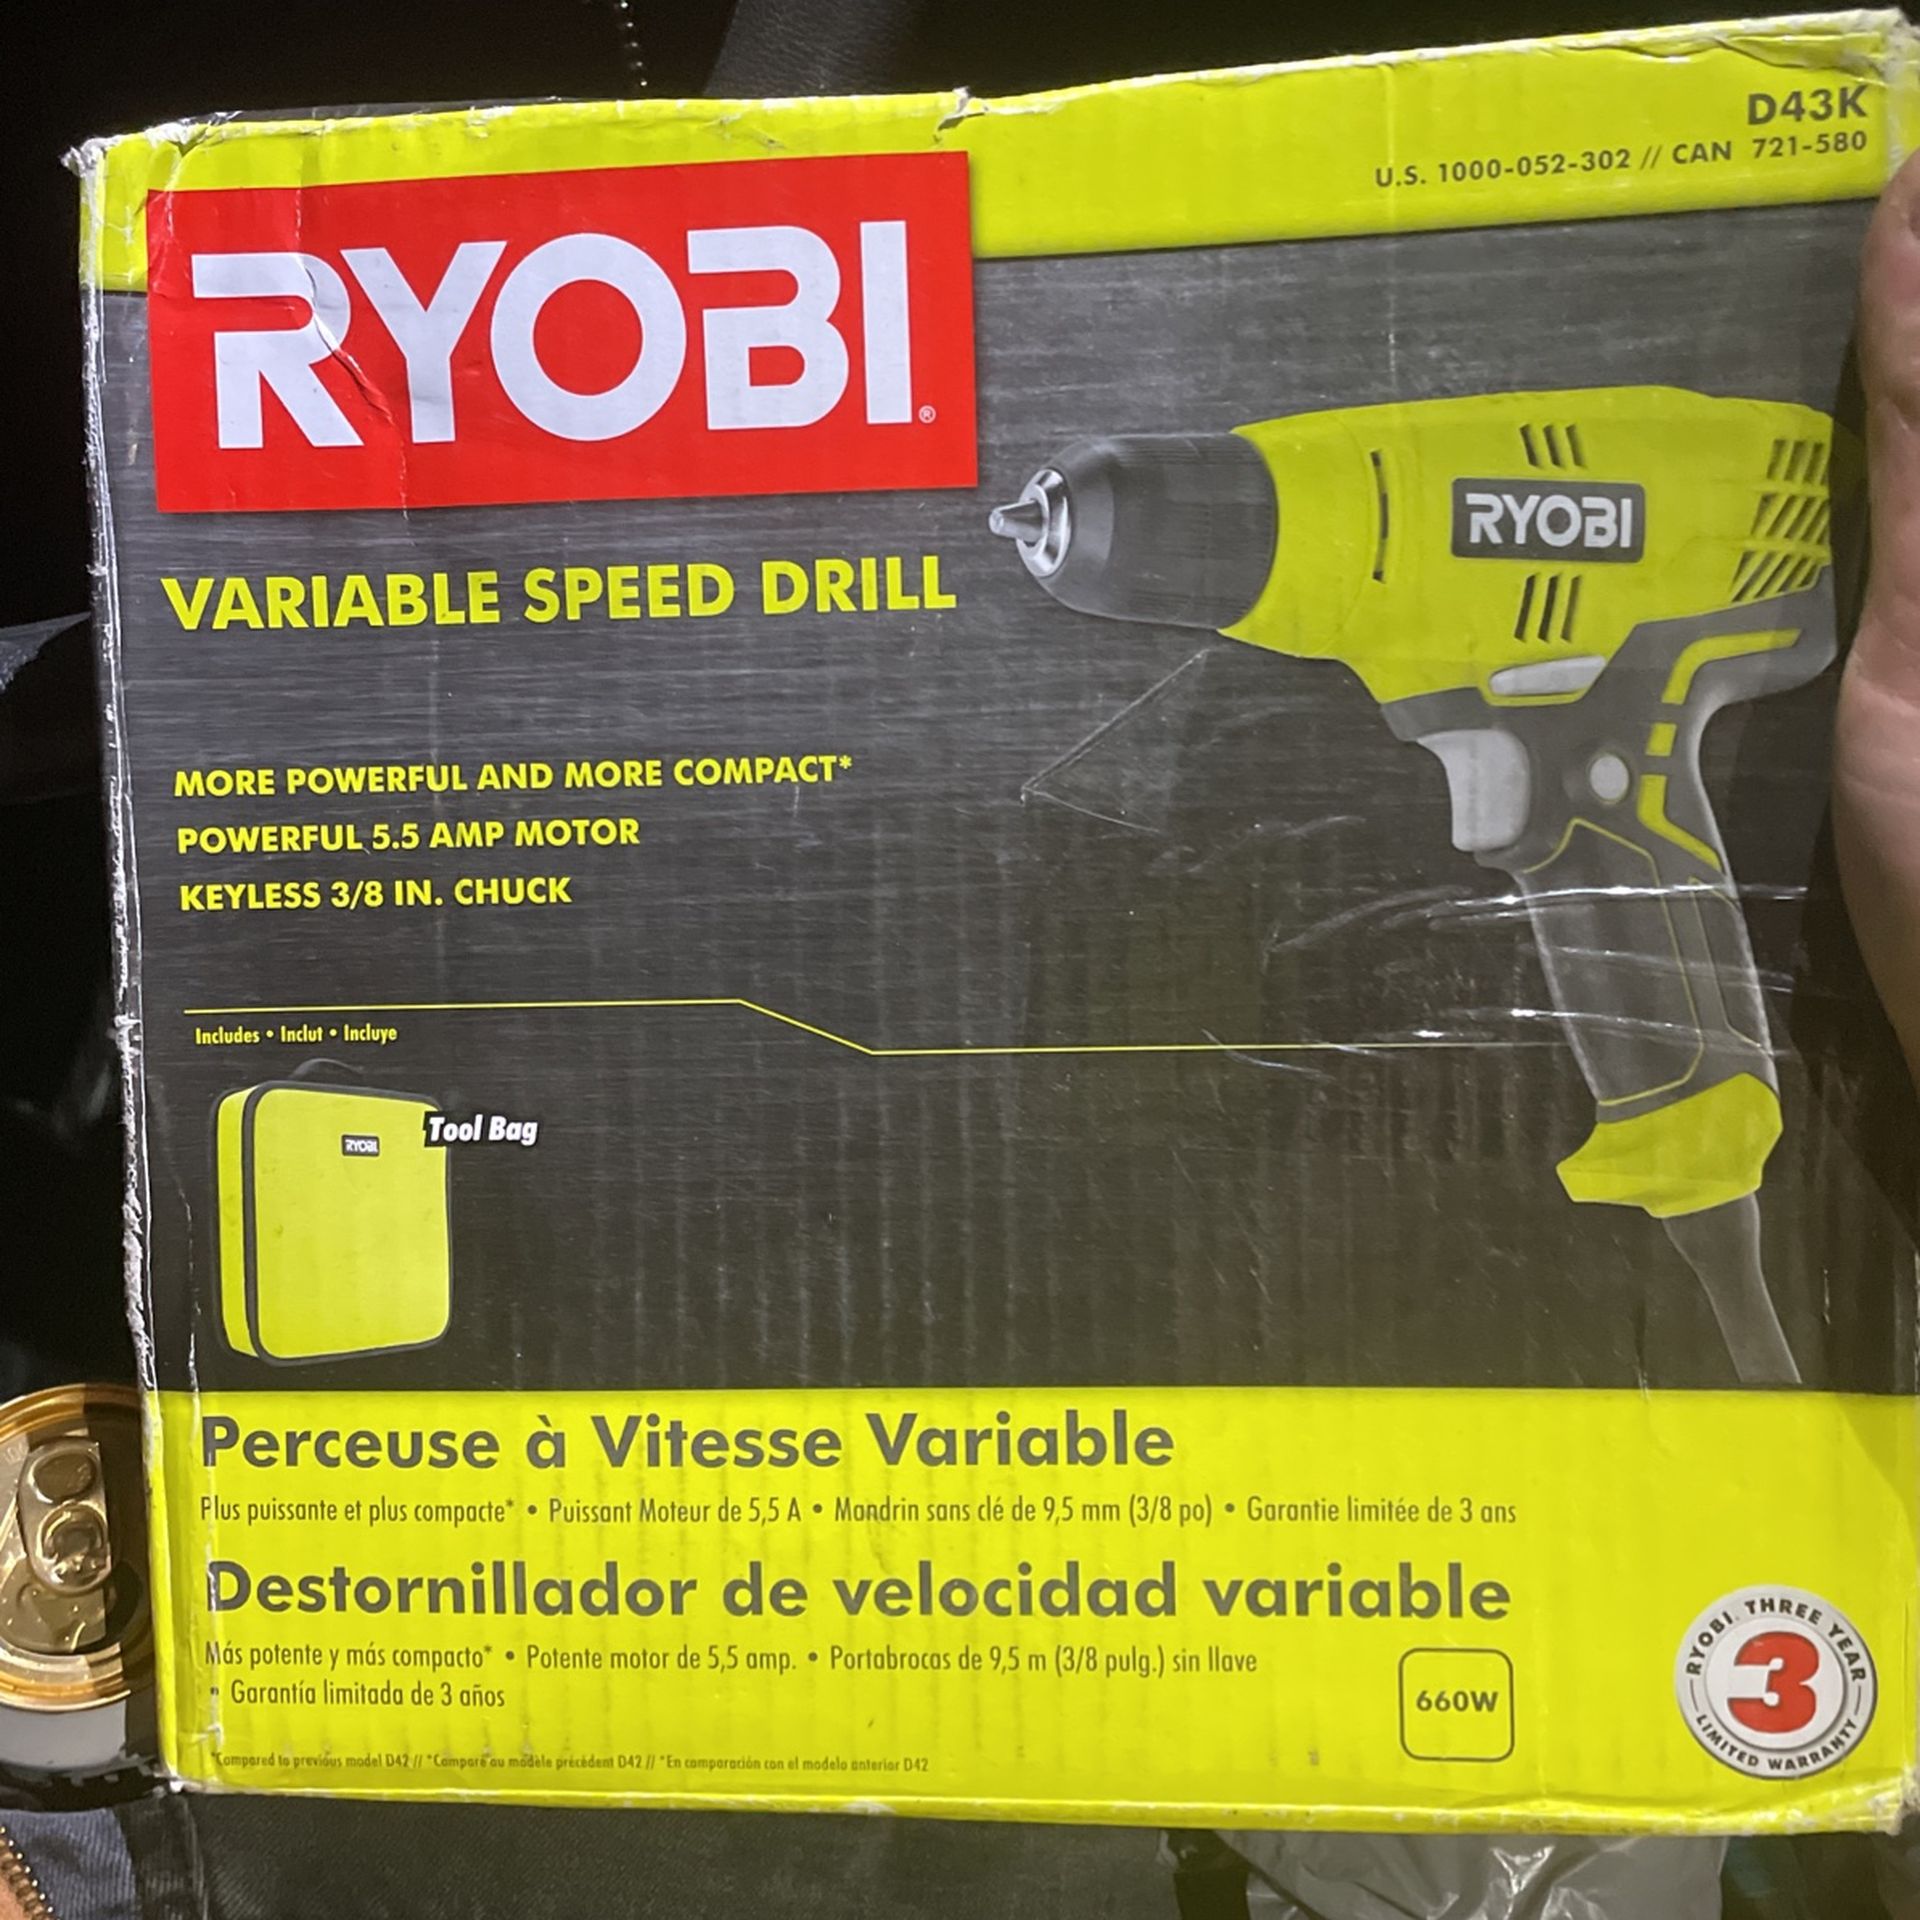 brand new ryobi drill and tool bag